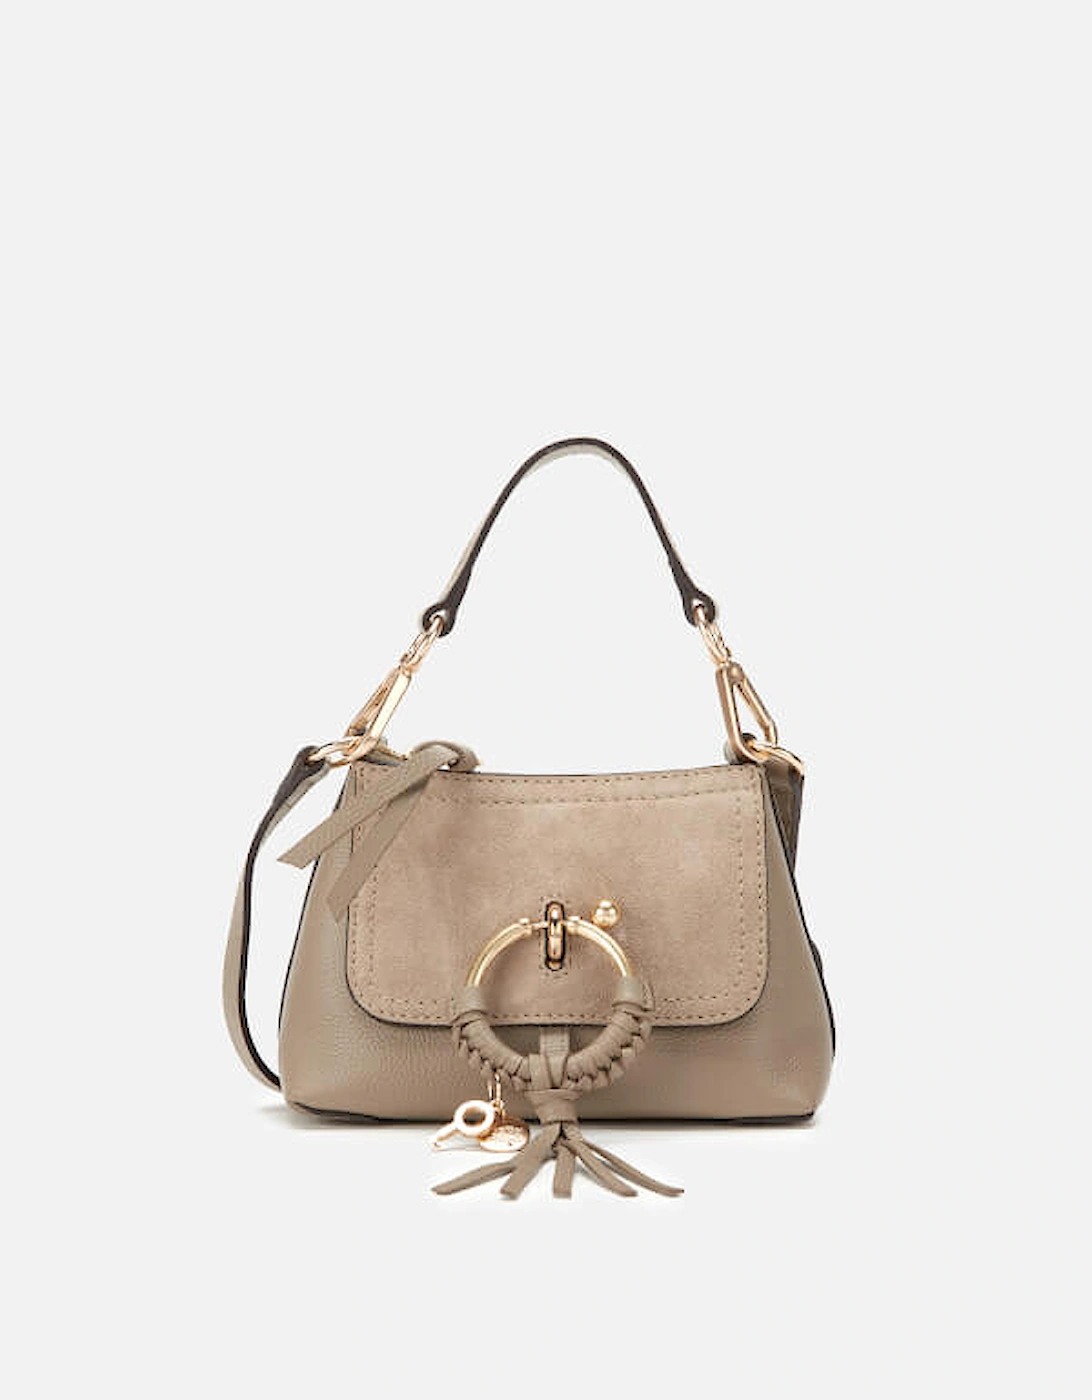 Home - Designer Handbags for Women - Designer Mini Bags - See By Chloé Women's Mini Joan Cross Body Bag - Motty Grey - See By Chloé - See By Chloé Women's Mini Joan Cross Body Bag - Motty Grey, 2 of 1